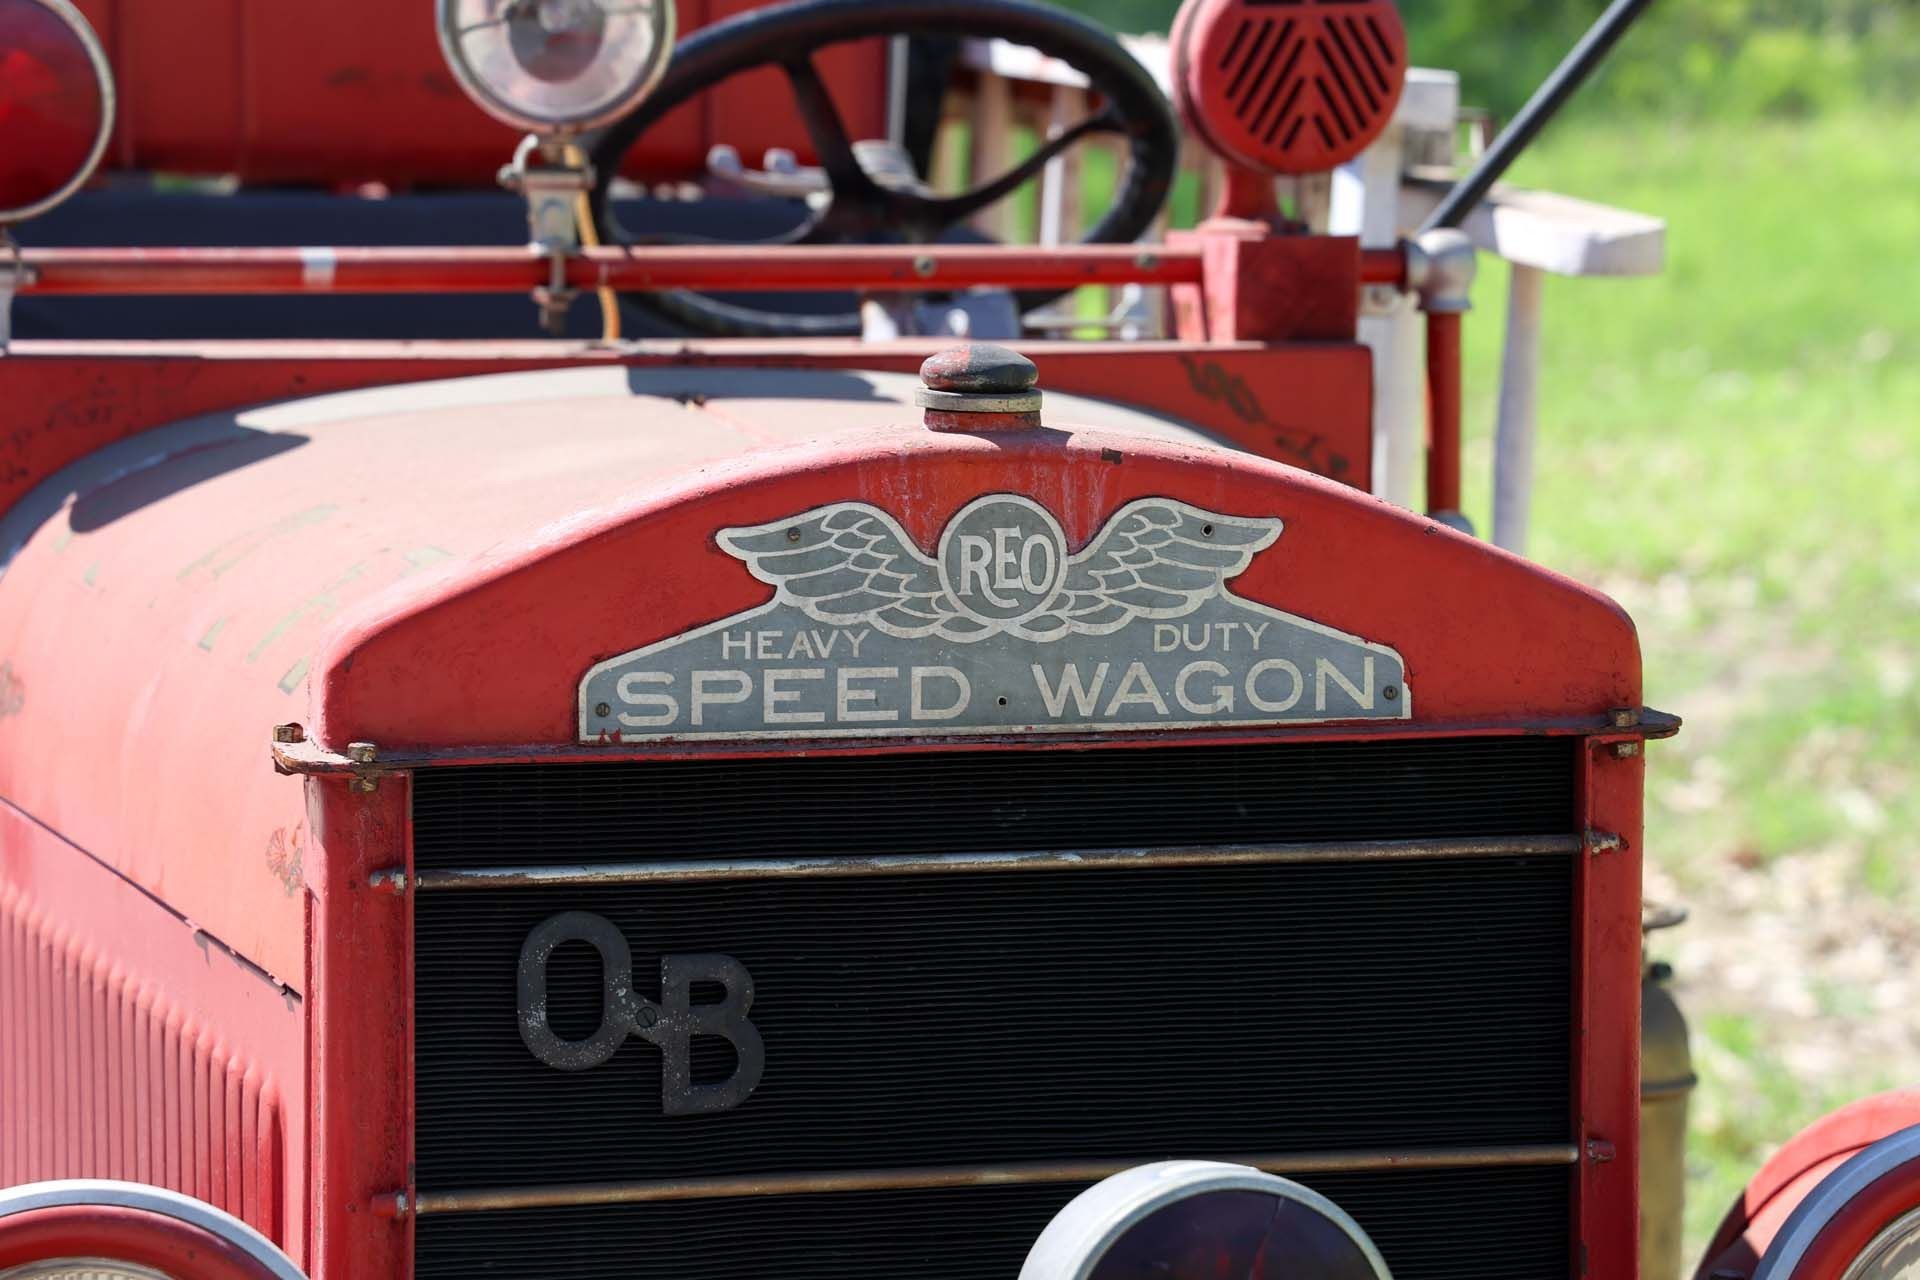 For Sale 1925 REO Speed Wagon Heavy Duty Oberchain-Boyer Fire Truck